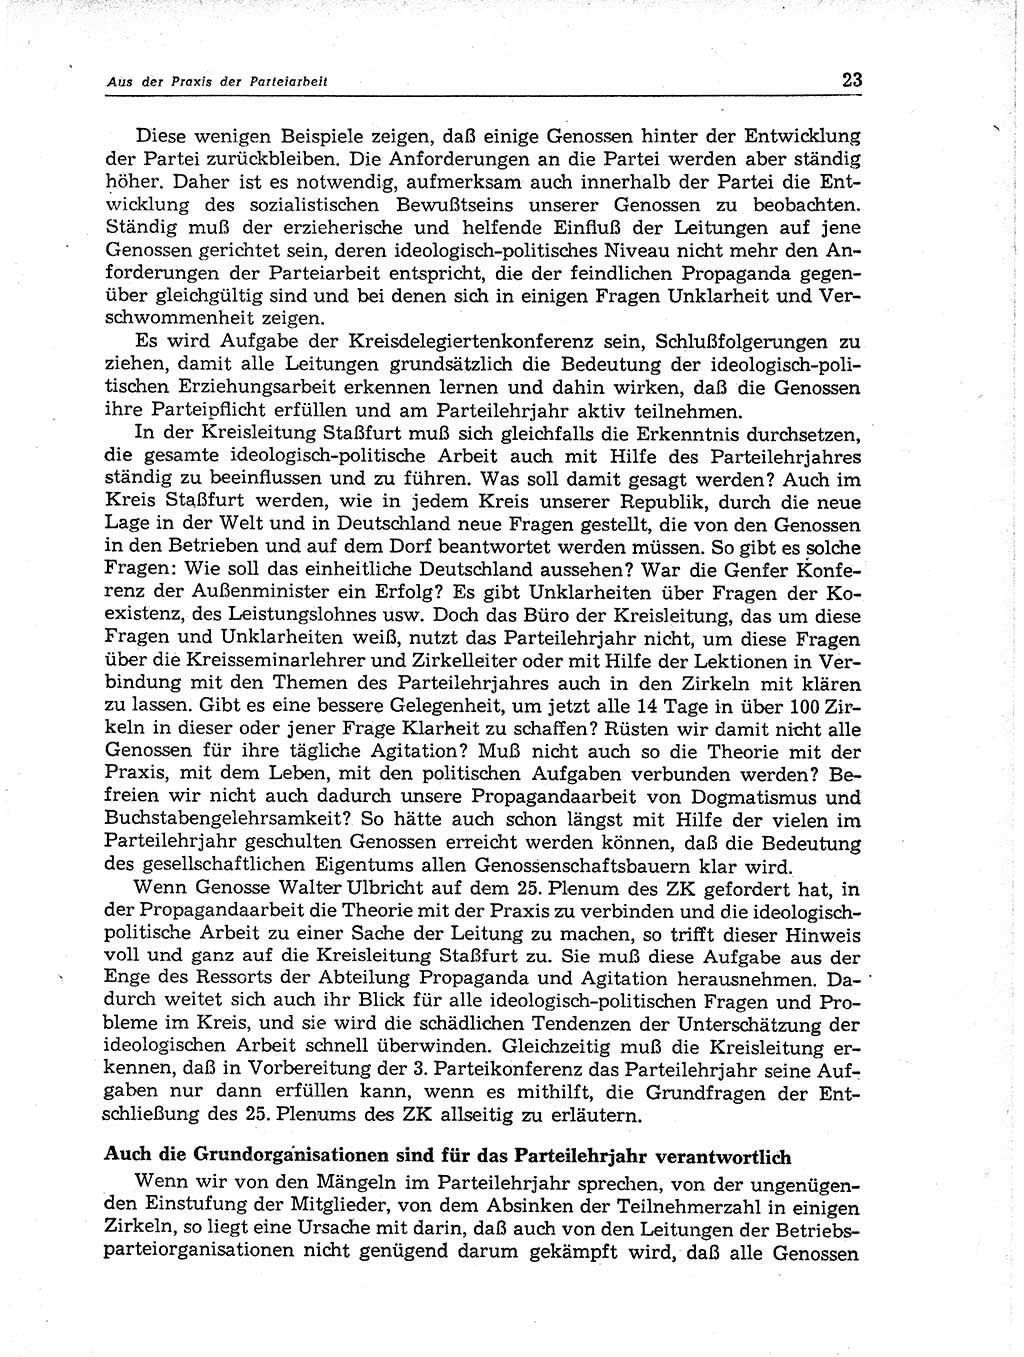 Neuer Weg (NW), Organ des Zentralkomitees (ZK) der SED (Sozialistische Einheitspartei Deutschlands) für Fragen des Parteiaufbaus und des Parteilebens, 11. Jahrgang [Deutsche Demokratische Republik (DDR)] 1956, Seite 23 (NW ZK SED DDR 1956, S. 23)